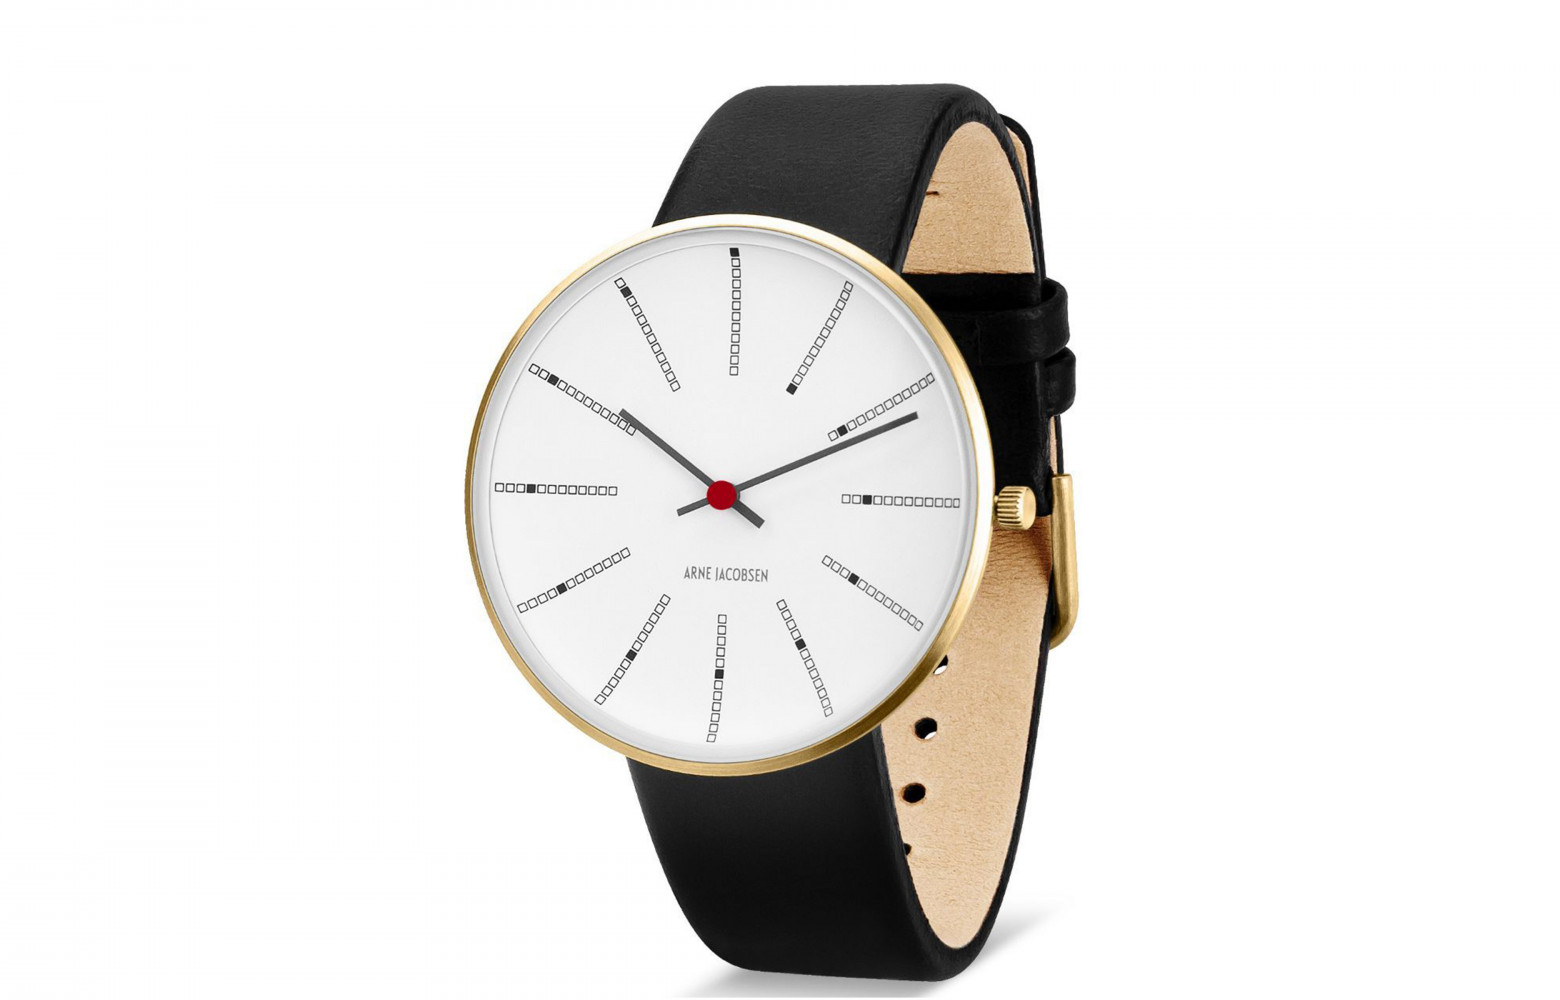 Montre Banker d'Arne Jacobsen (Rosendahl). Ce modèle est une adaptation d'une horloge créée pour la Banque du...